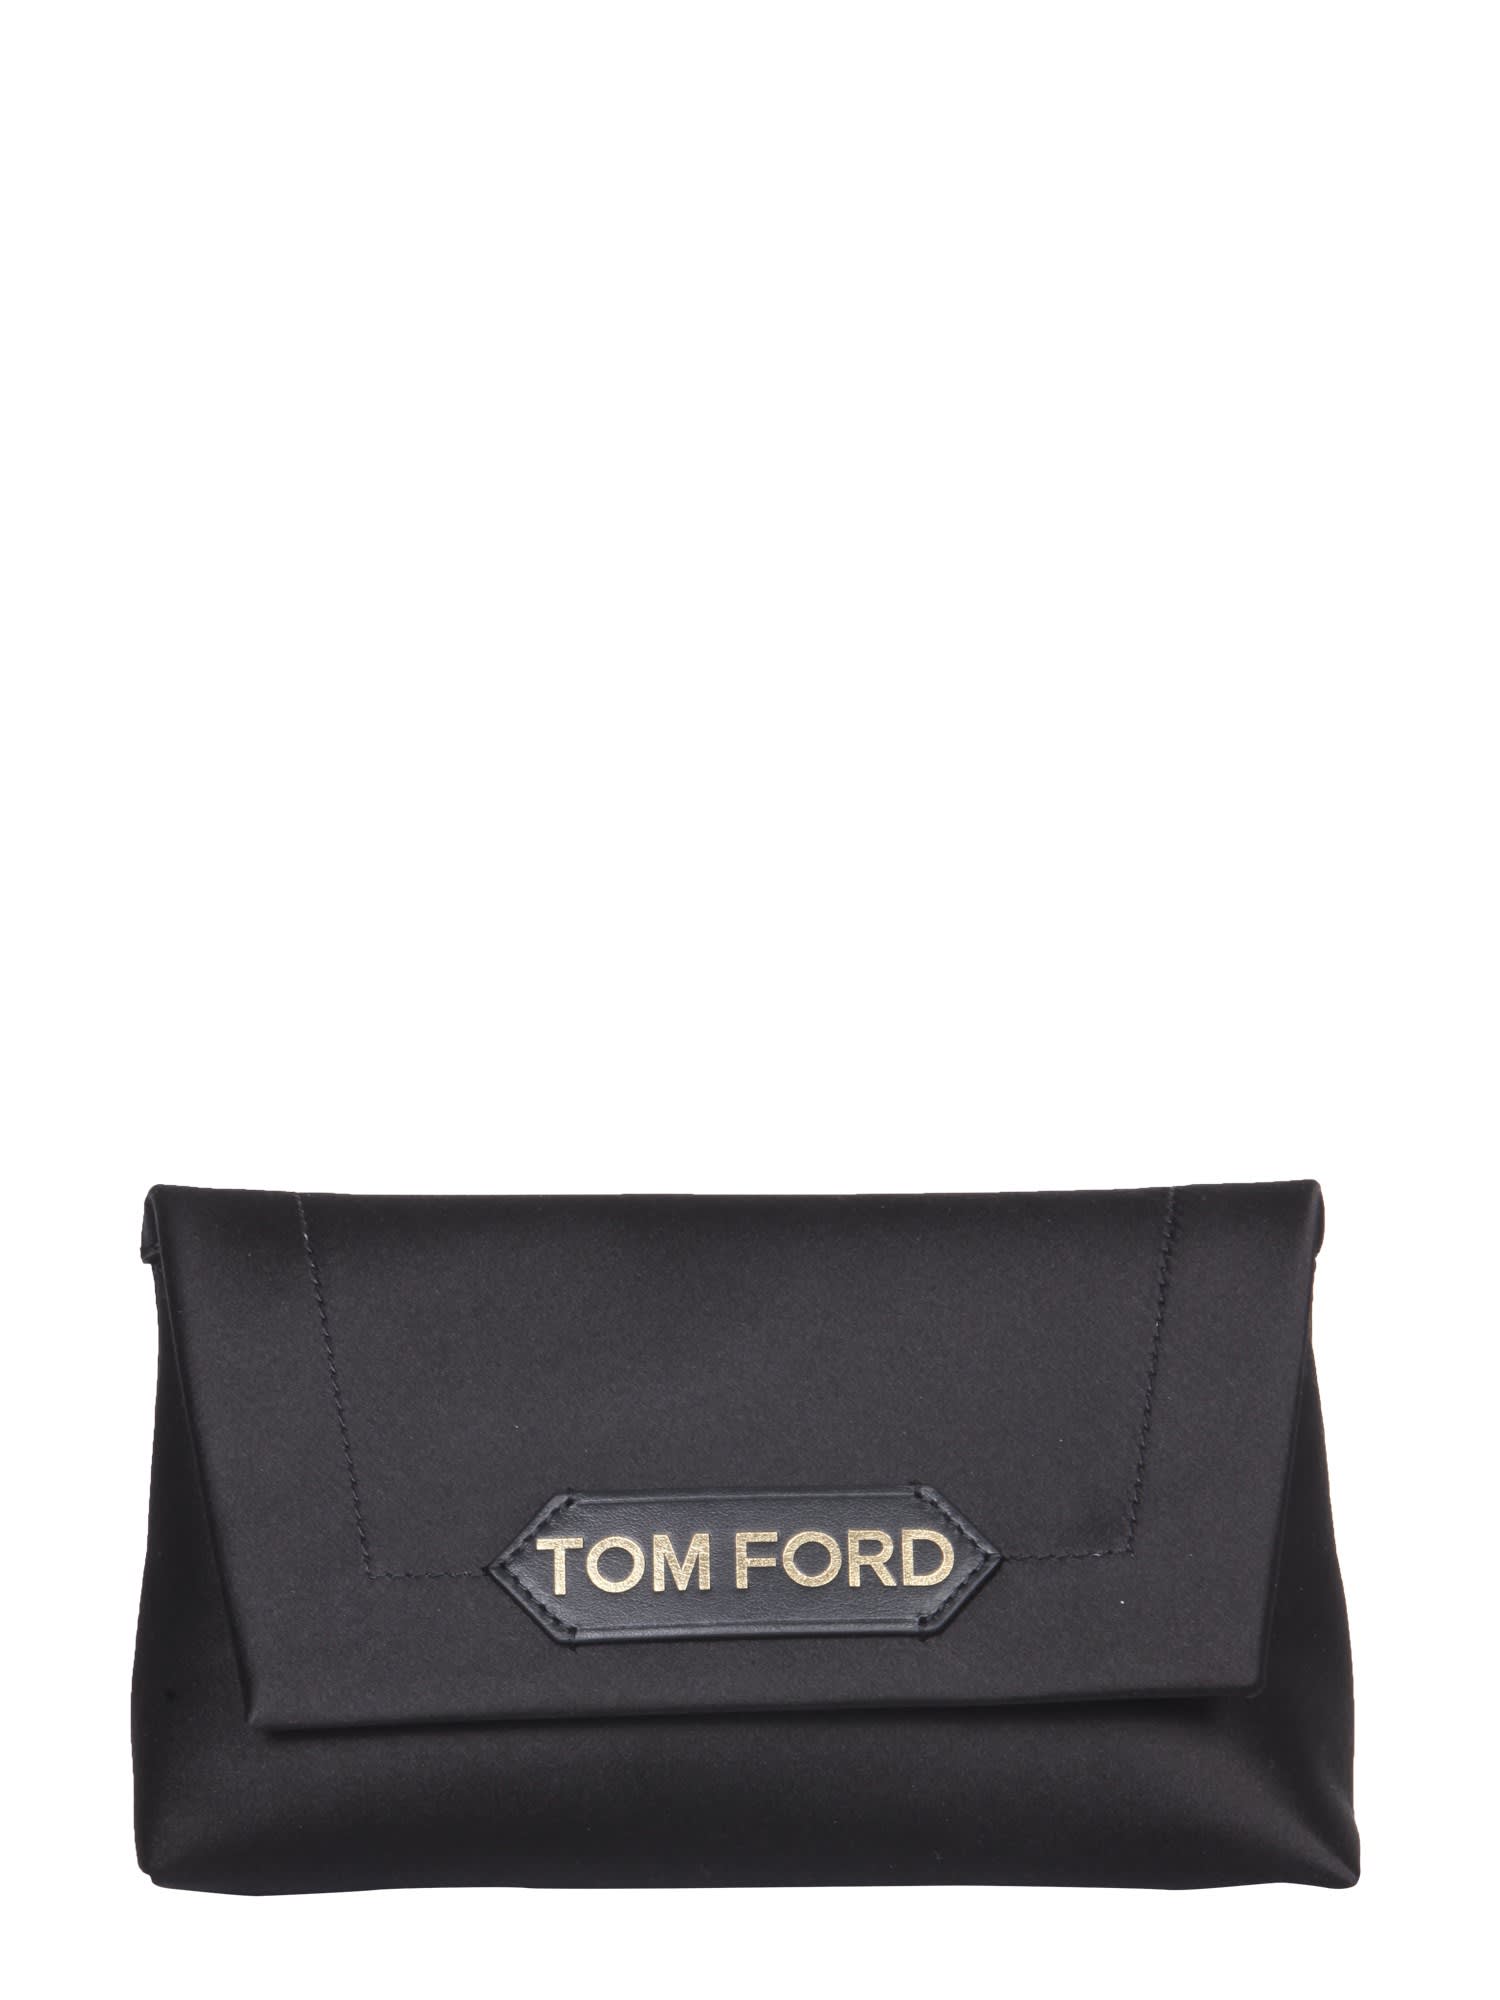 Tom Ford Mini Chain Bag